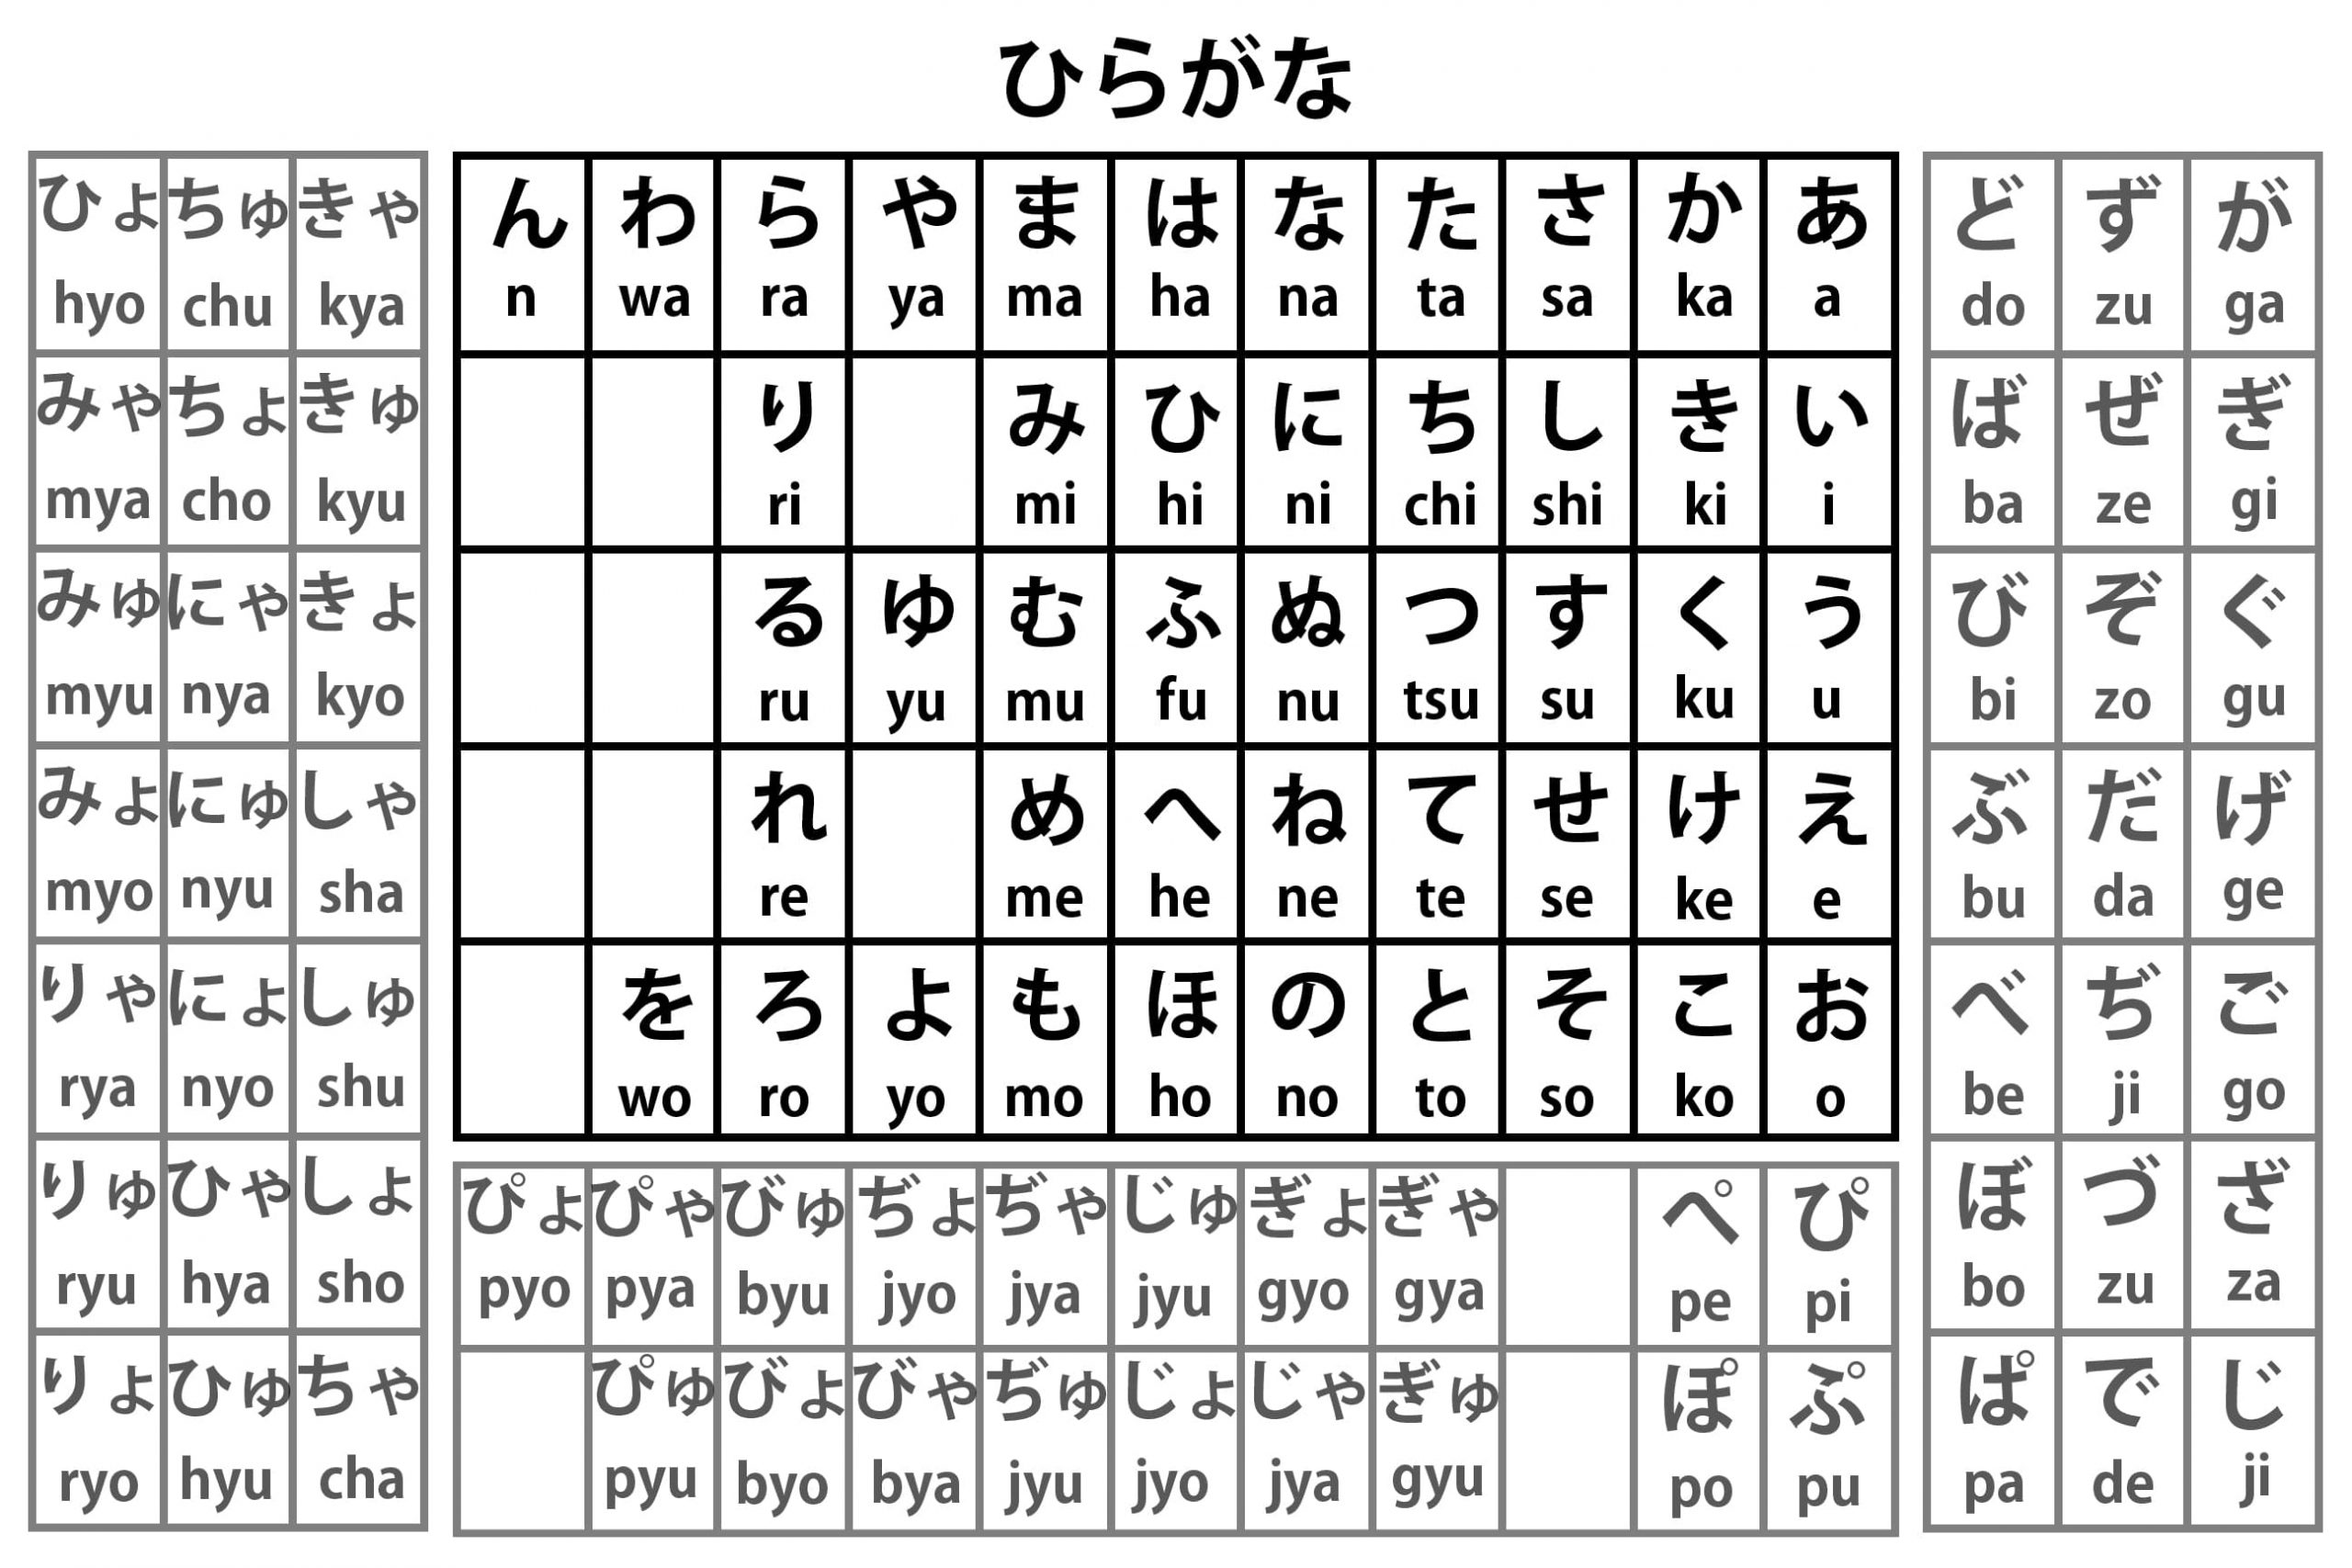 Cách đọc bảng chữ cái tiếng Nhật